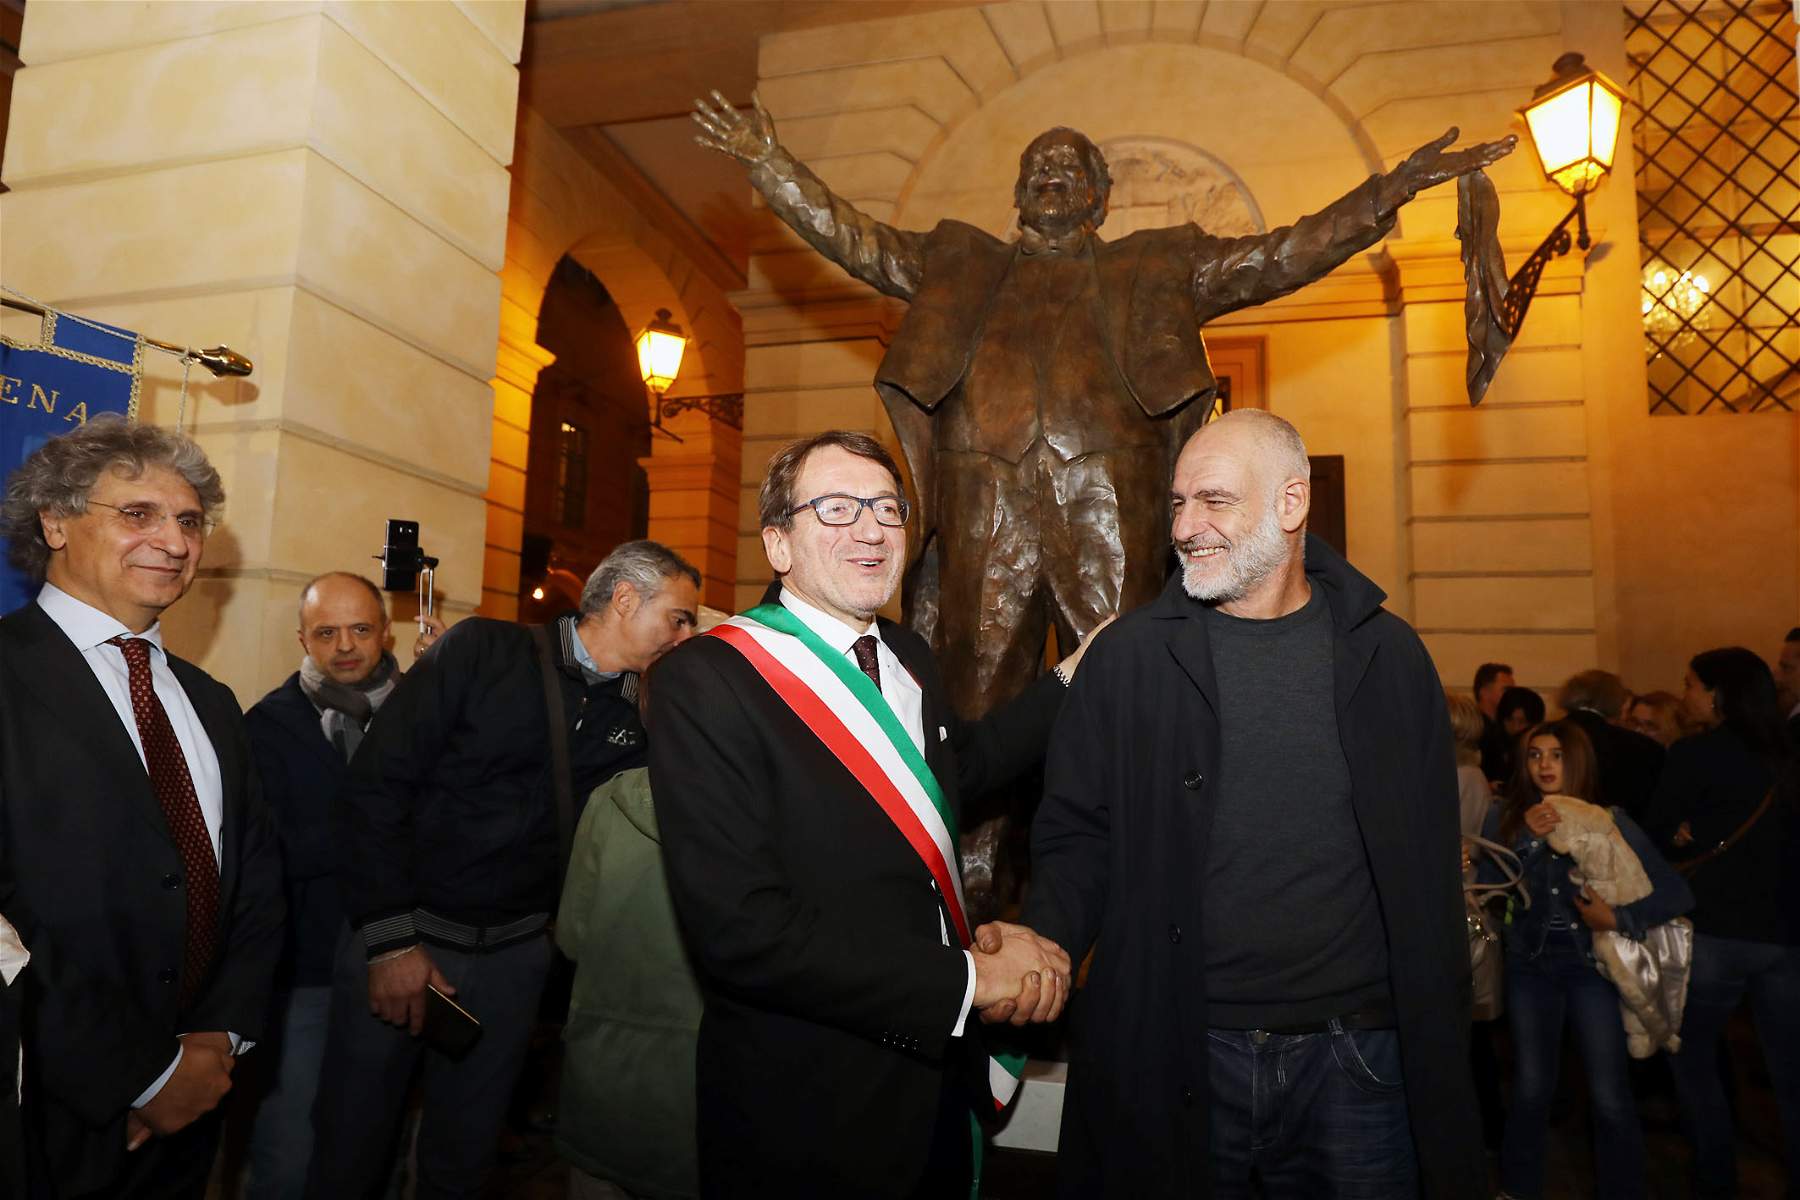 Luciano Pavarotti statue unveiled in Modena